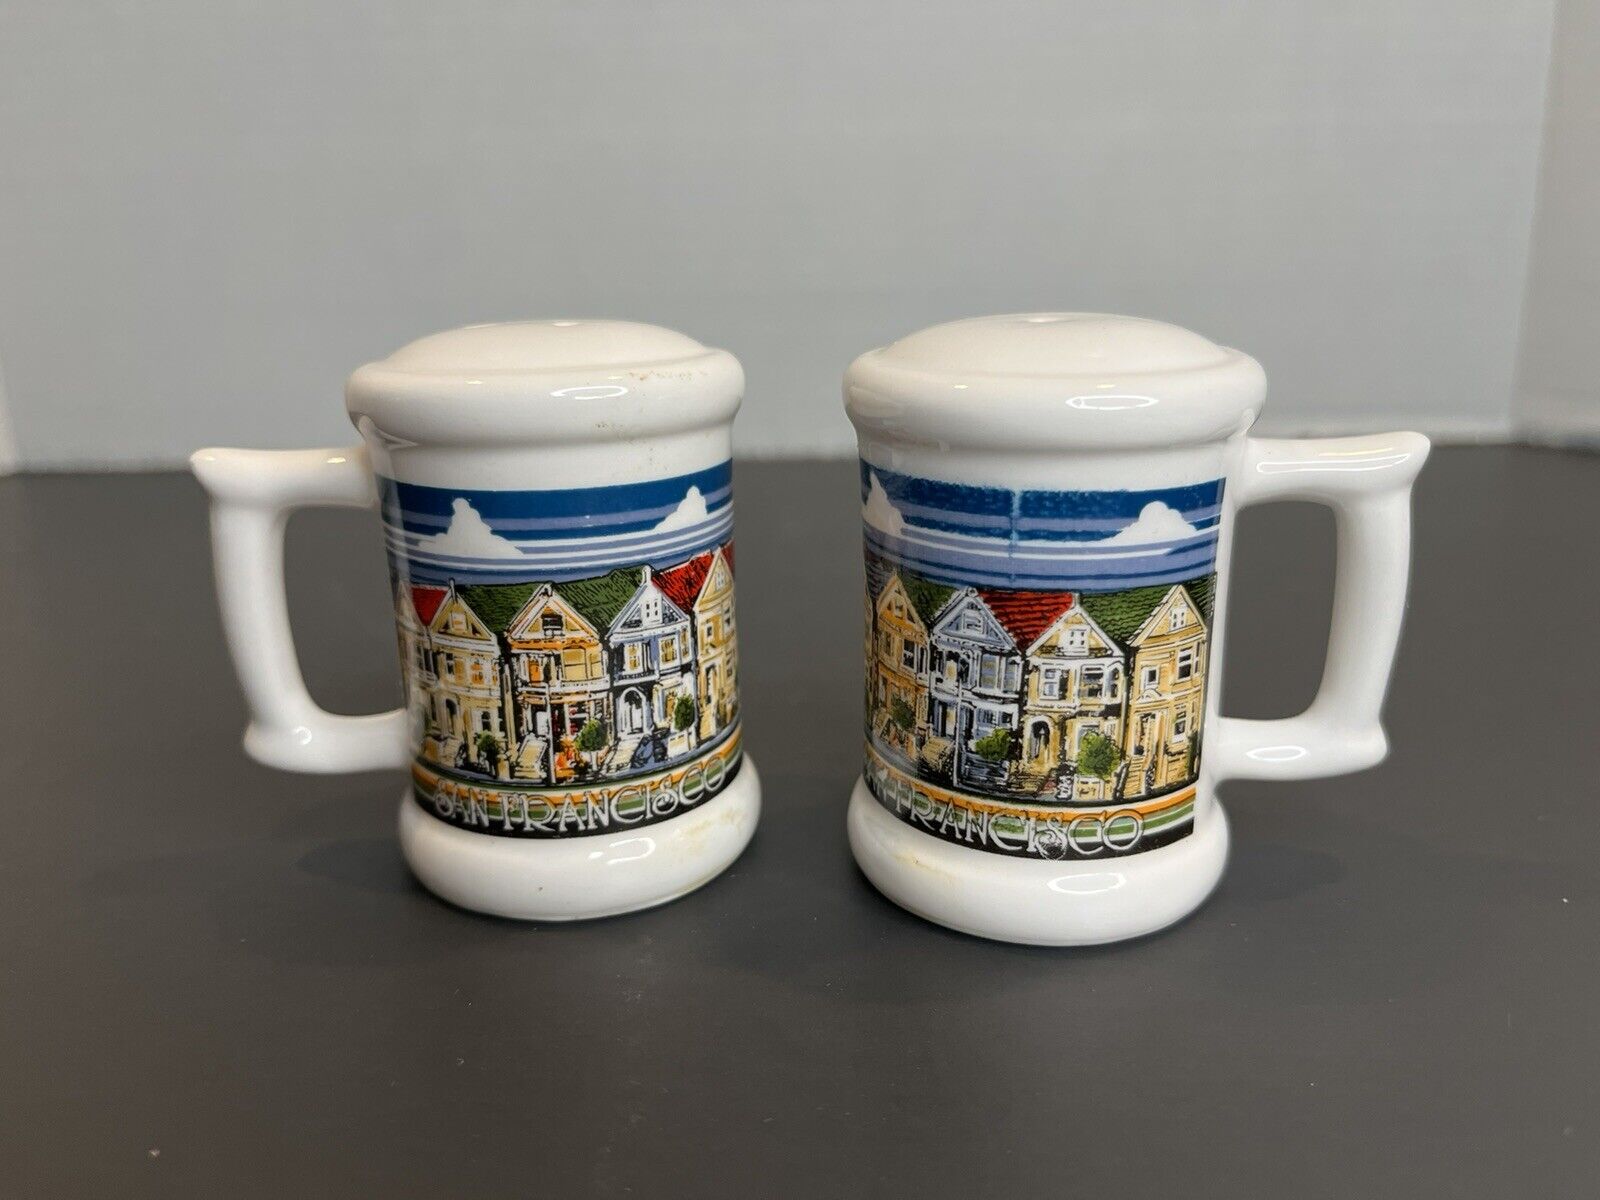 Vintage San Francisco Ceramic Salt And Pepper Shaker Souvenir Set,Made In Korea 